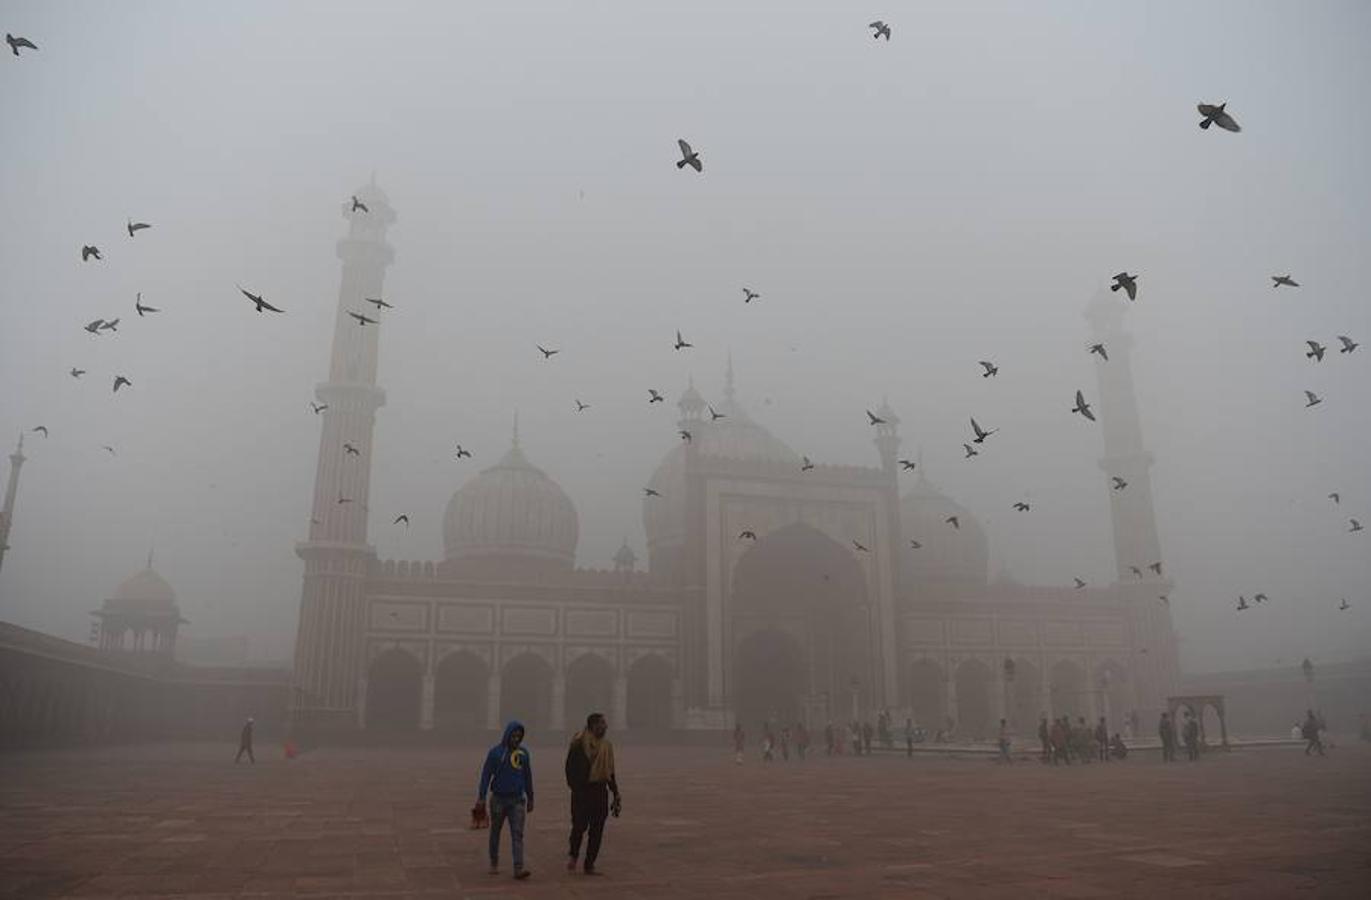 La capital de India, Nueva Delhi se encuentra cubierta por una niebla de contaminación. Esta situación se extiende por toda la zona norte del país y ha provocado el cierre de escuelas, estaciones de tren y aeropuertos. La nube, además, ha obligado a la gente a mantenerse en sus casas o salir a la calle con mascarilla.